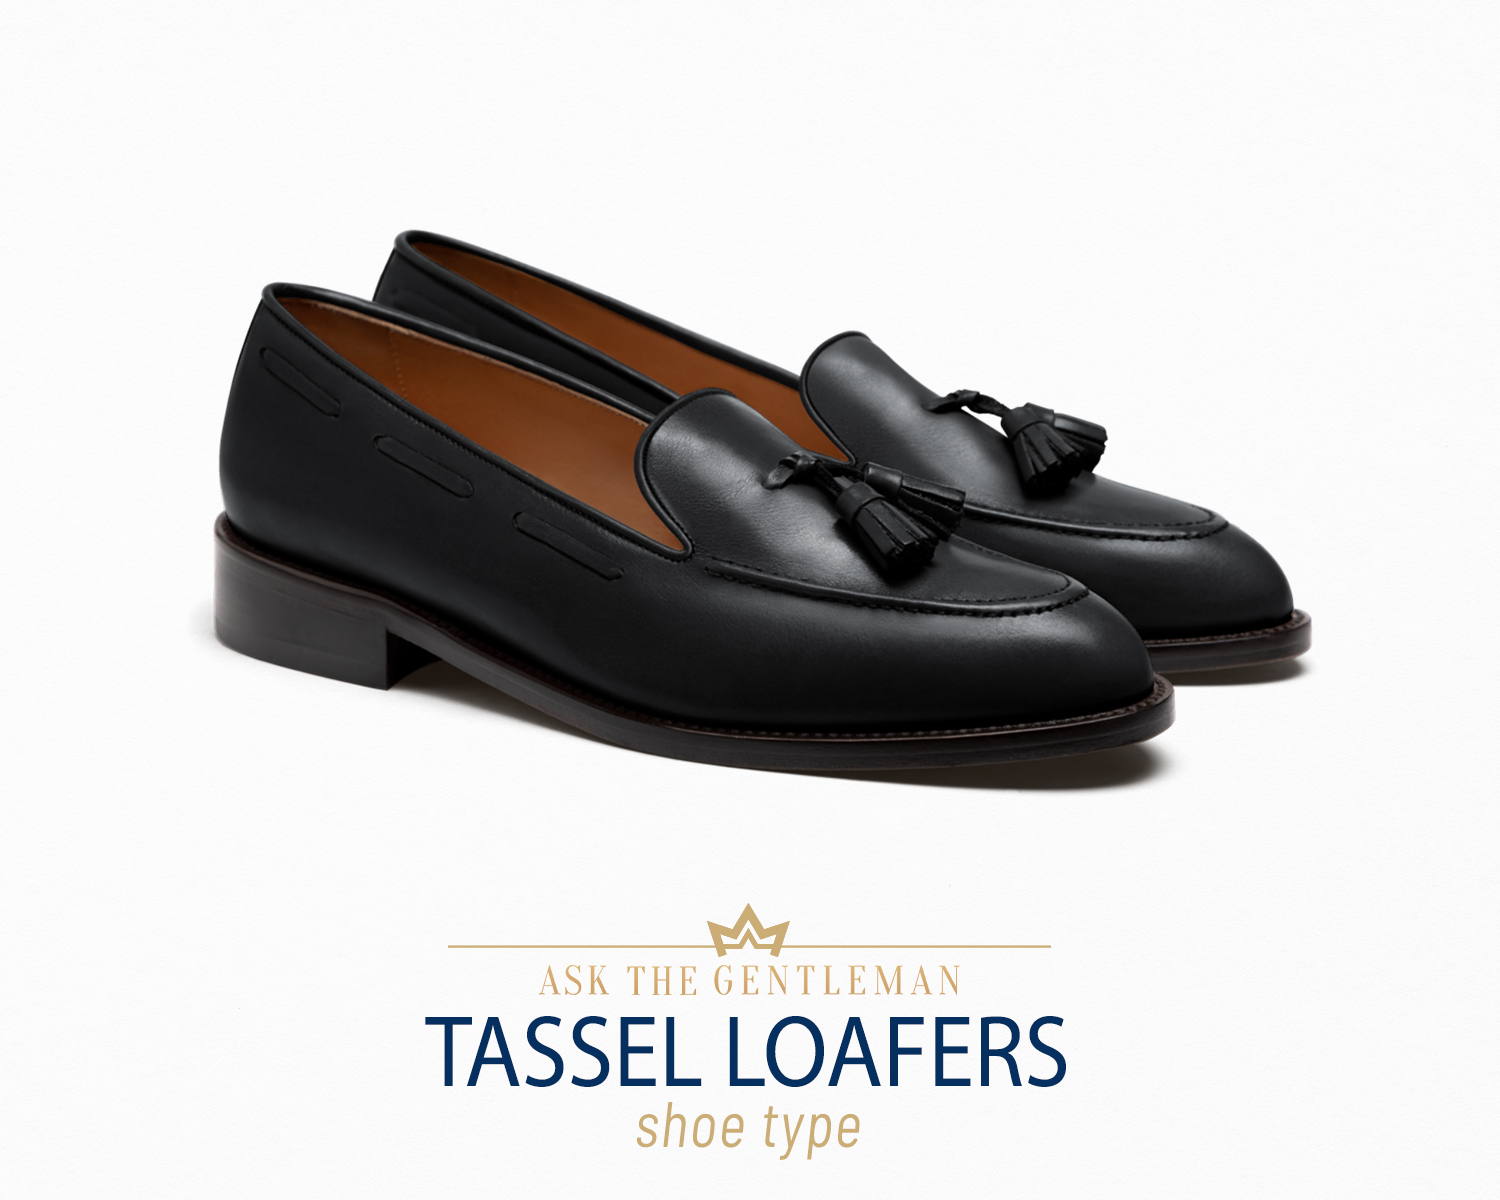 Tassel loafer shoe type